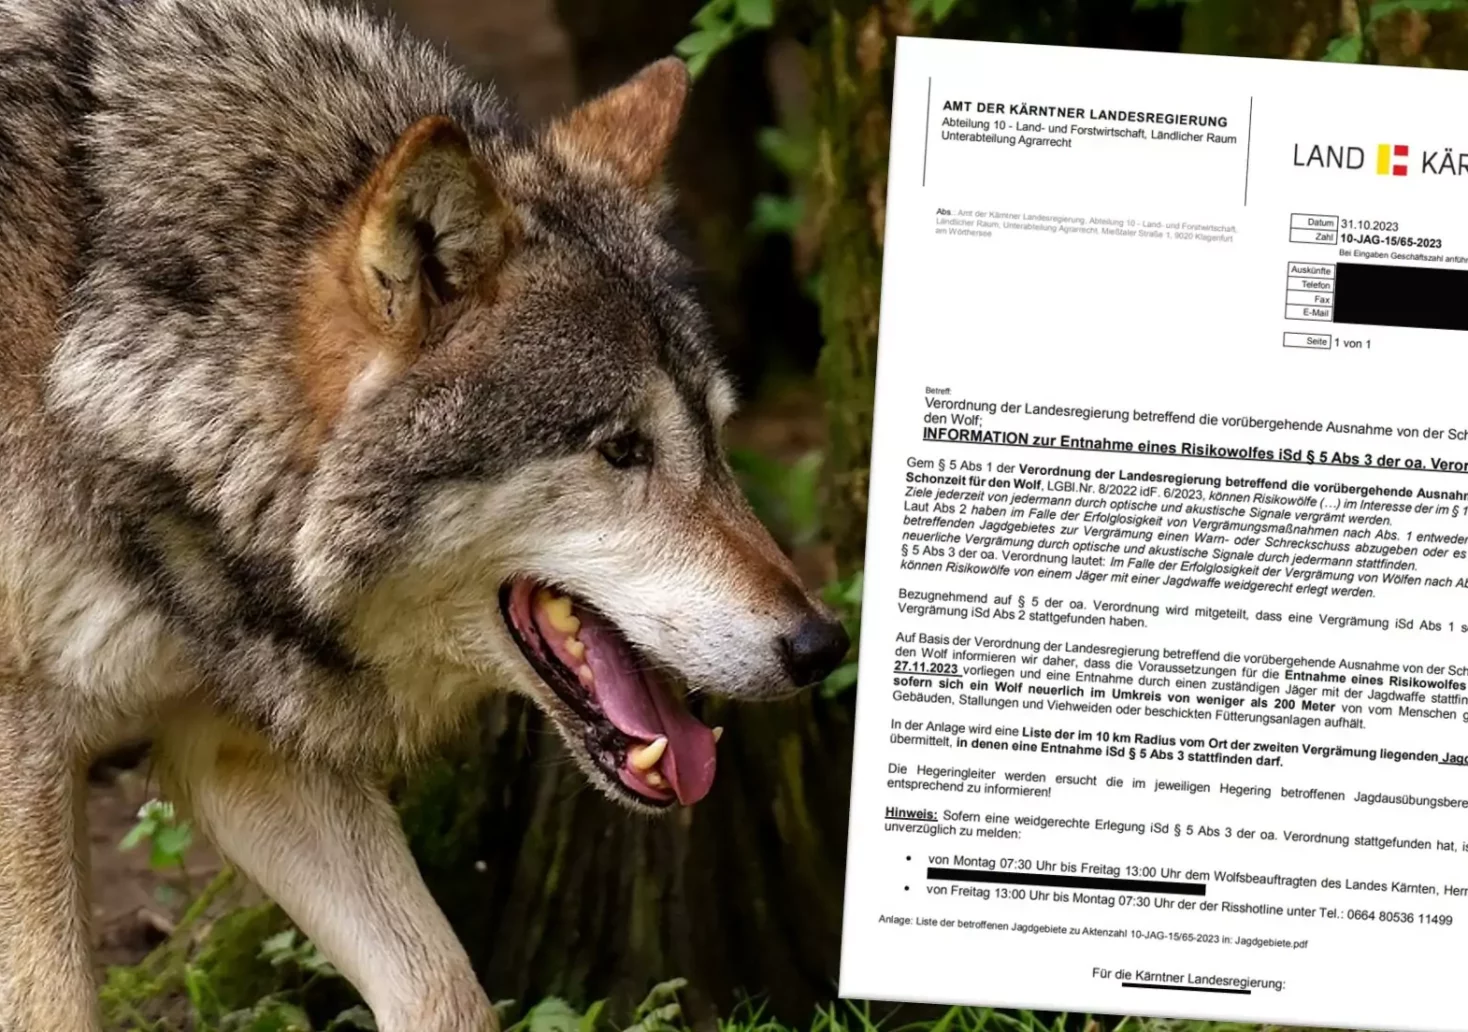 Eine Bildmontage auf 5min.at zeigt einen Wolf und die Verordnung der Landesregierung zur Entnahme eines Risikowolfes.